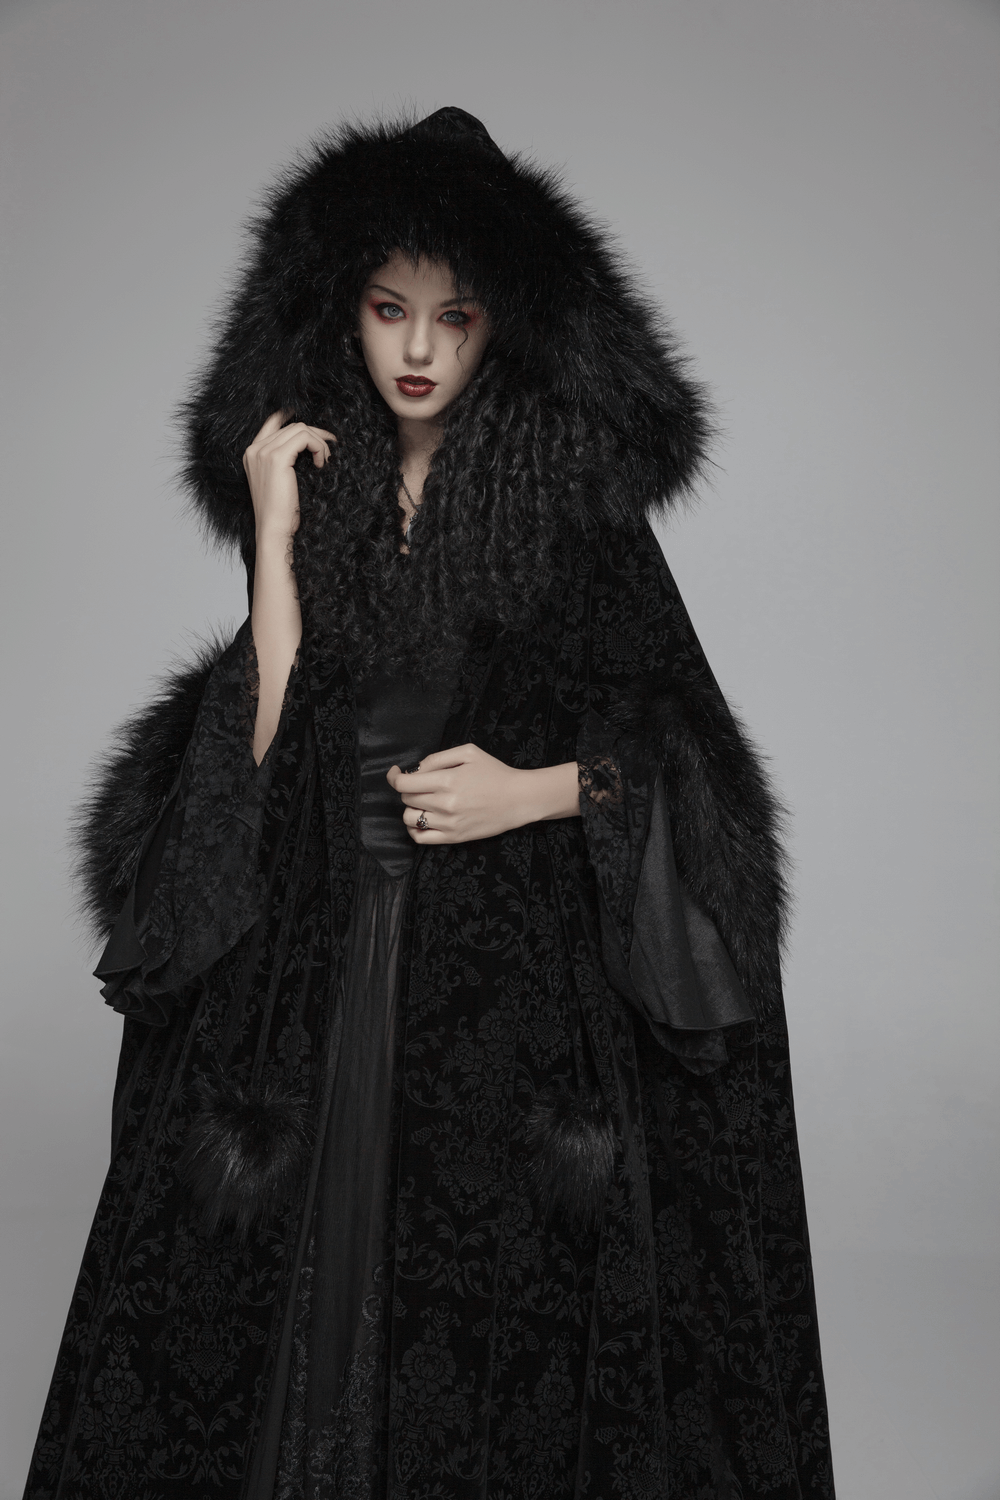 Lux Velvet Hooded Gothic Cloak Full-length for Ladies - HARD'N'HEAVY